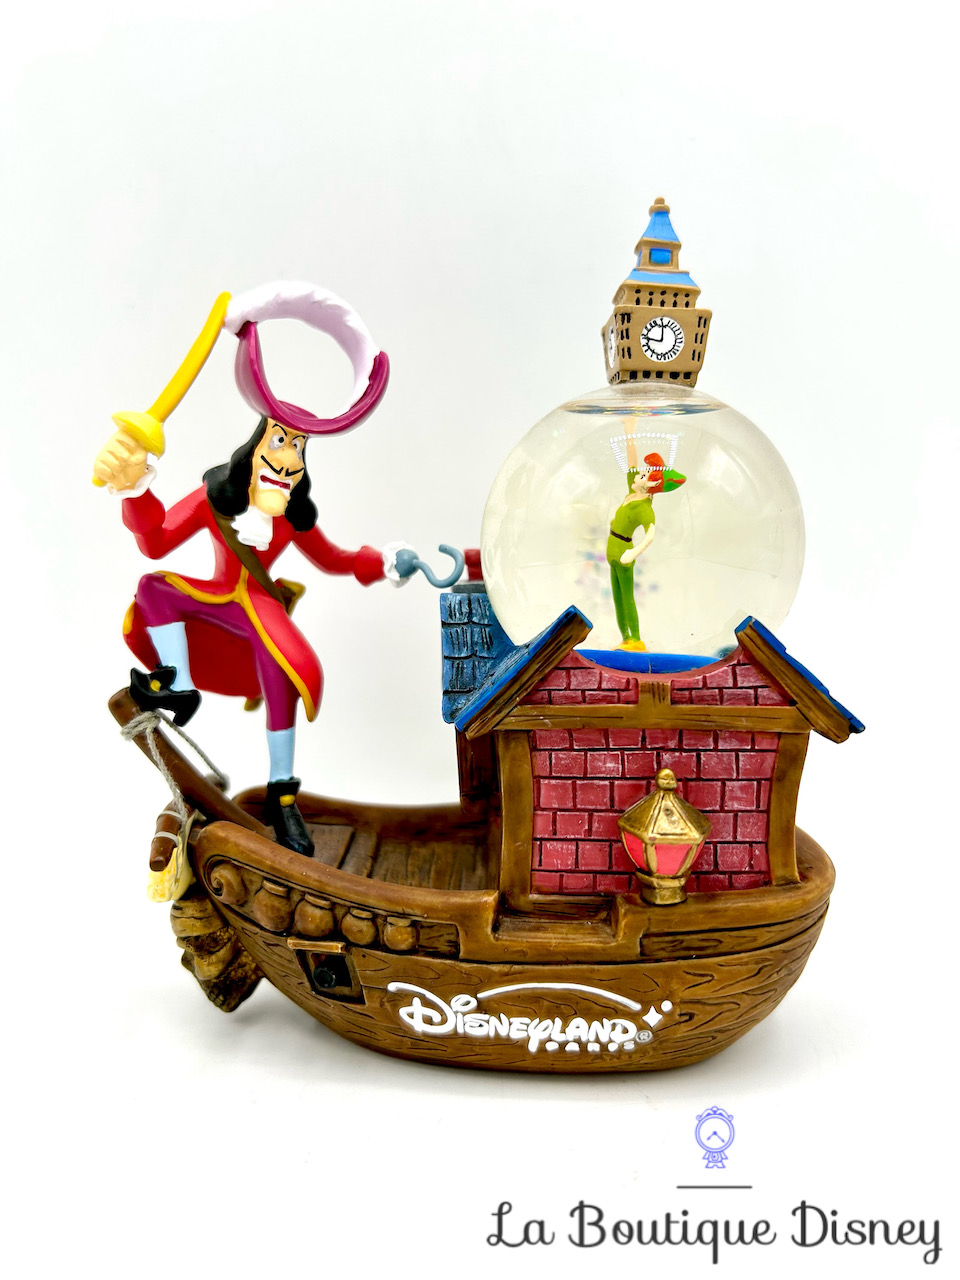 Boule à neige Peter Pan Capitaine Crochet Disneyland Paris snow globe Disney bateau